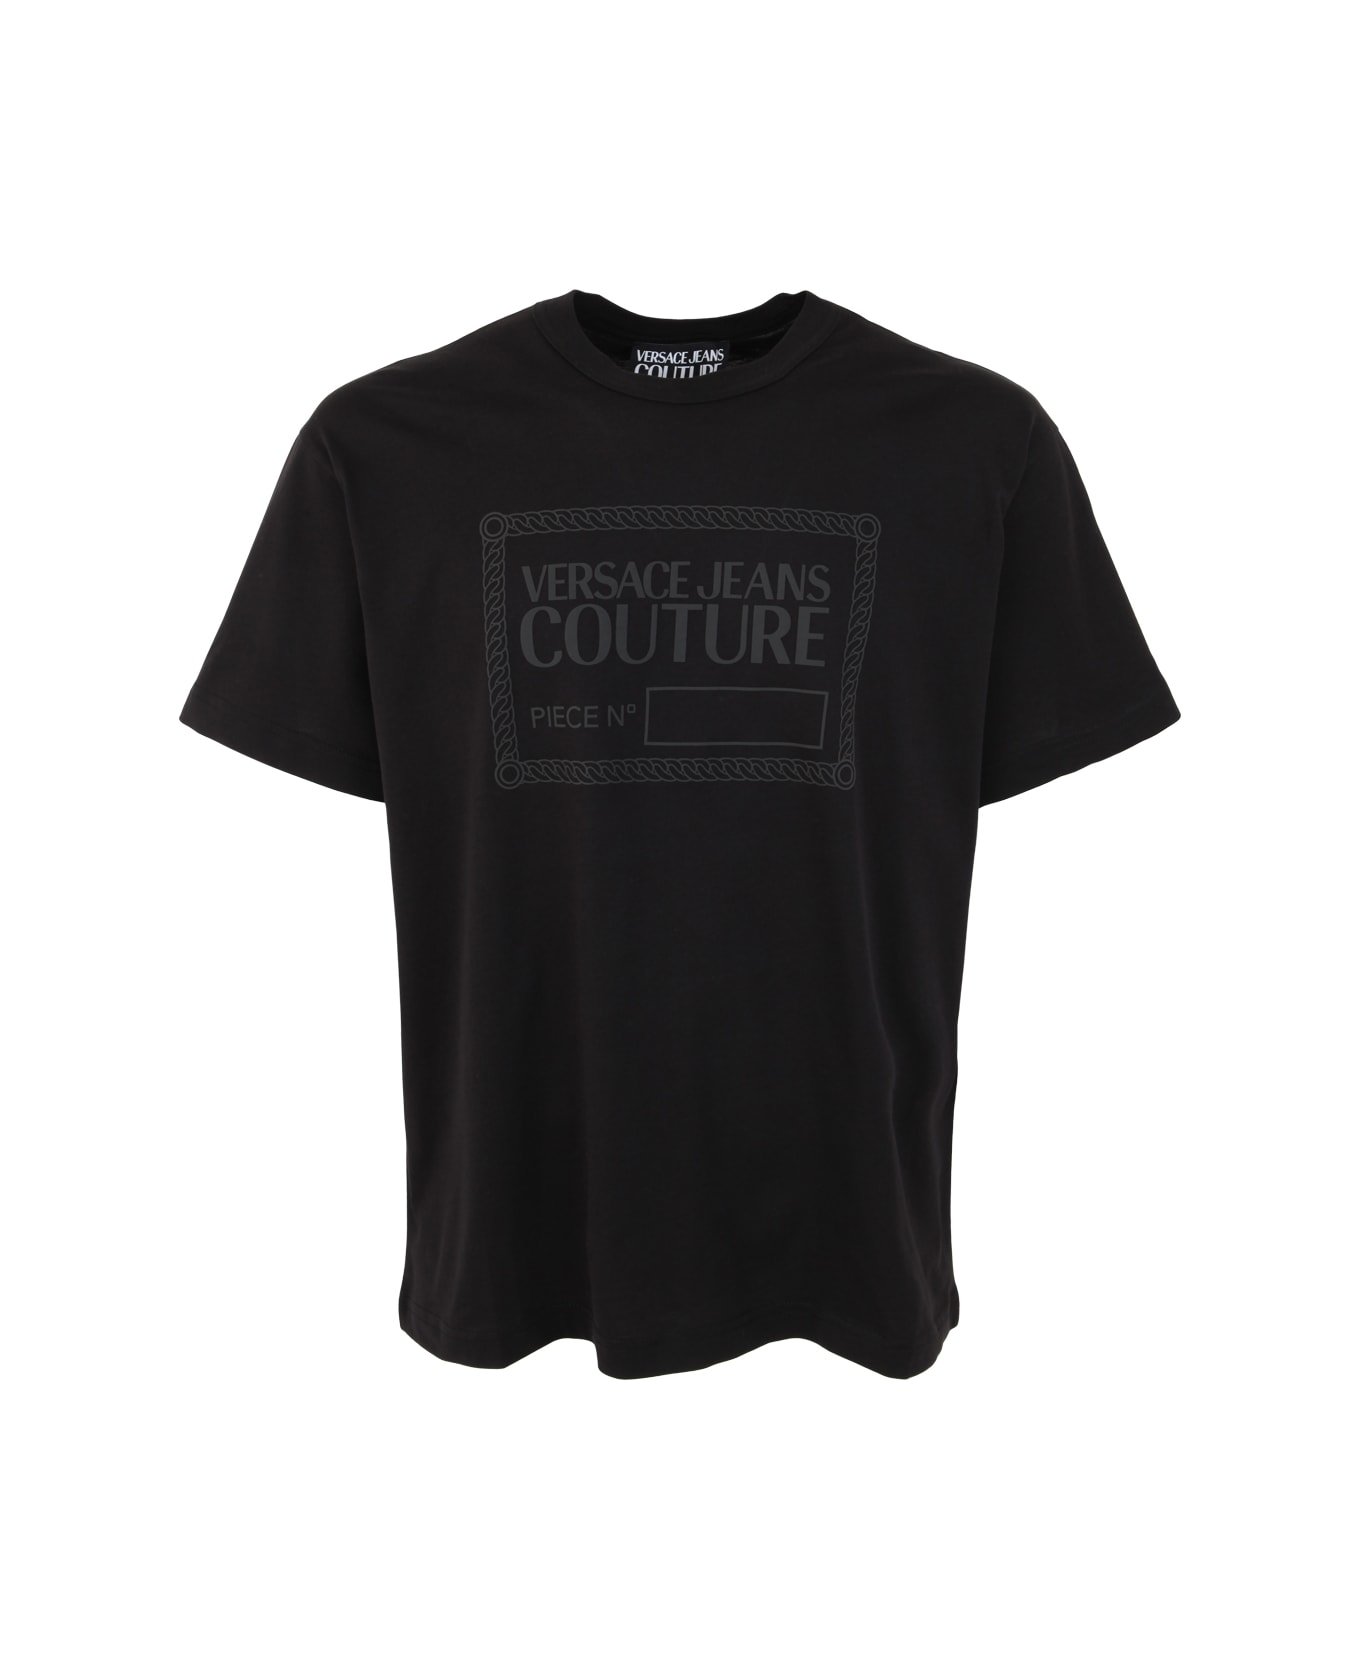 Versace Jeans Couture R Piece Nr Rubb T-shirt - Black